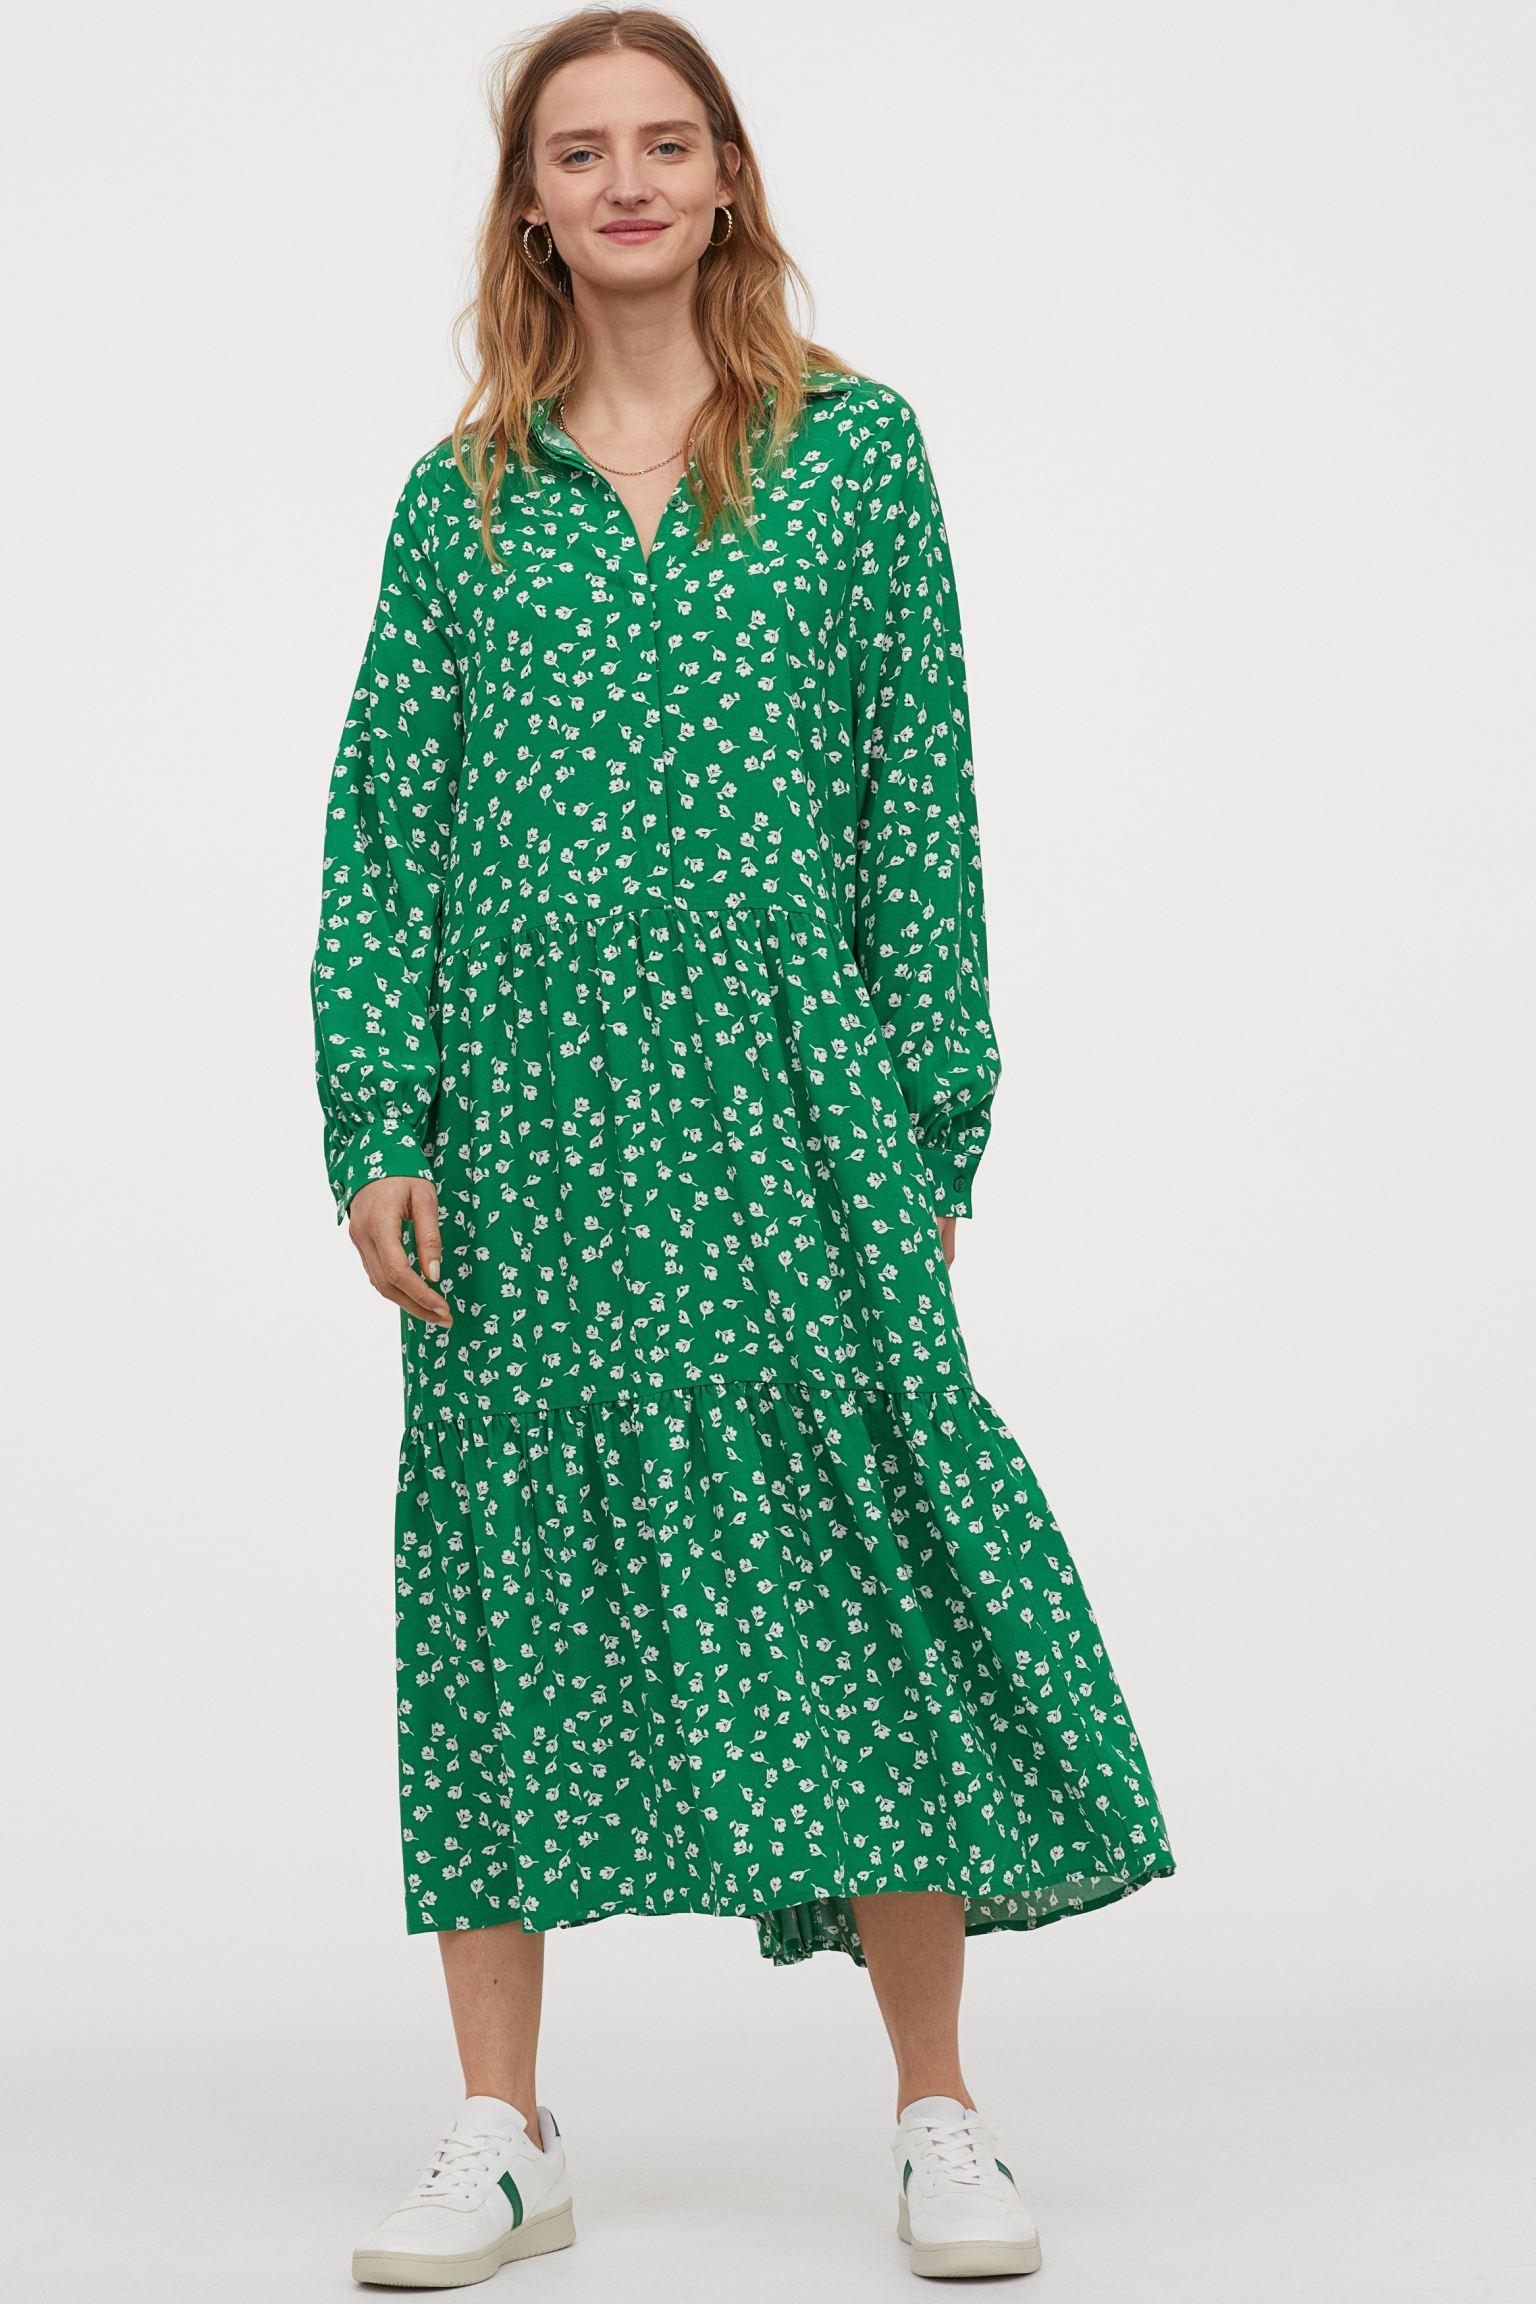 Отзыв на Платье с Воротник из Интернет-Магазина H&M